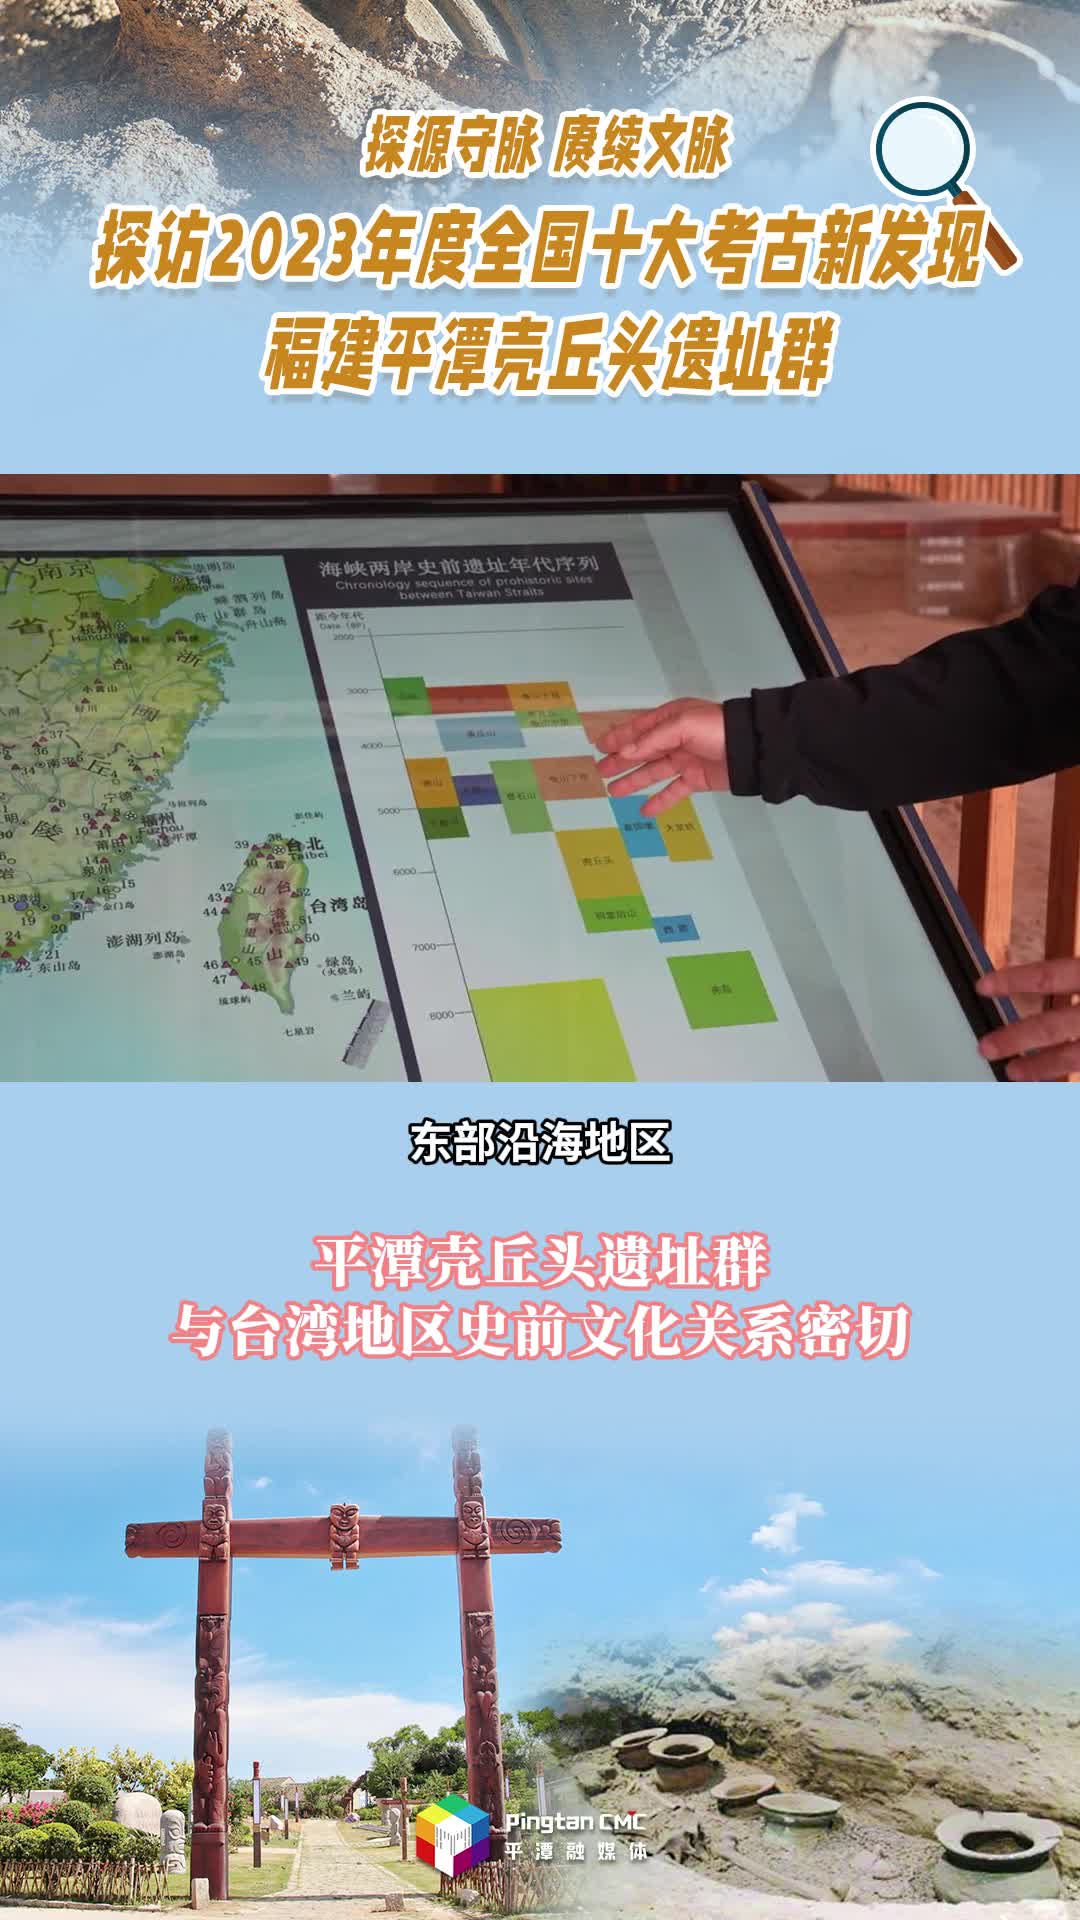 平潭壳丘头遗址群与台湾地区史前文化关系密切